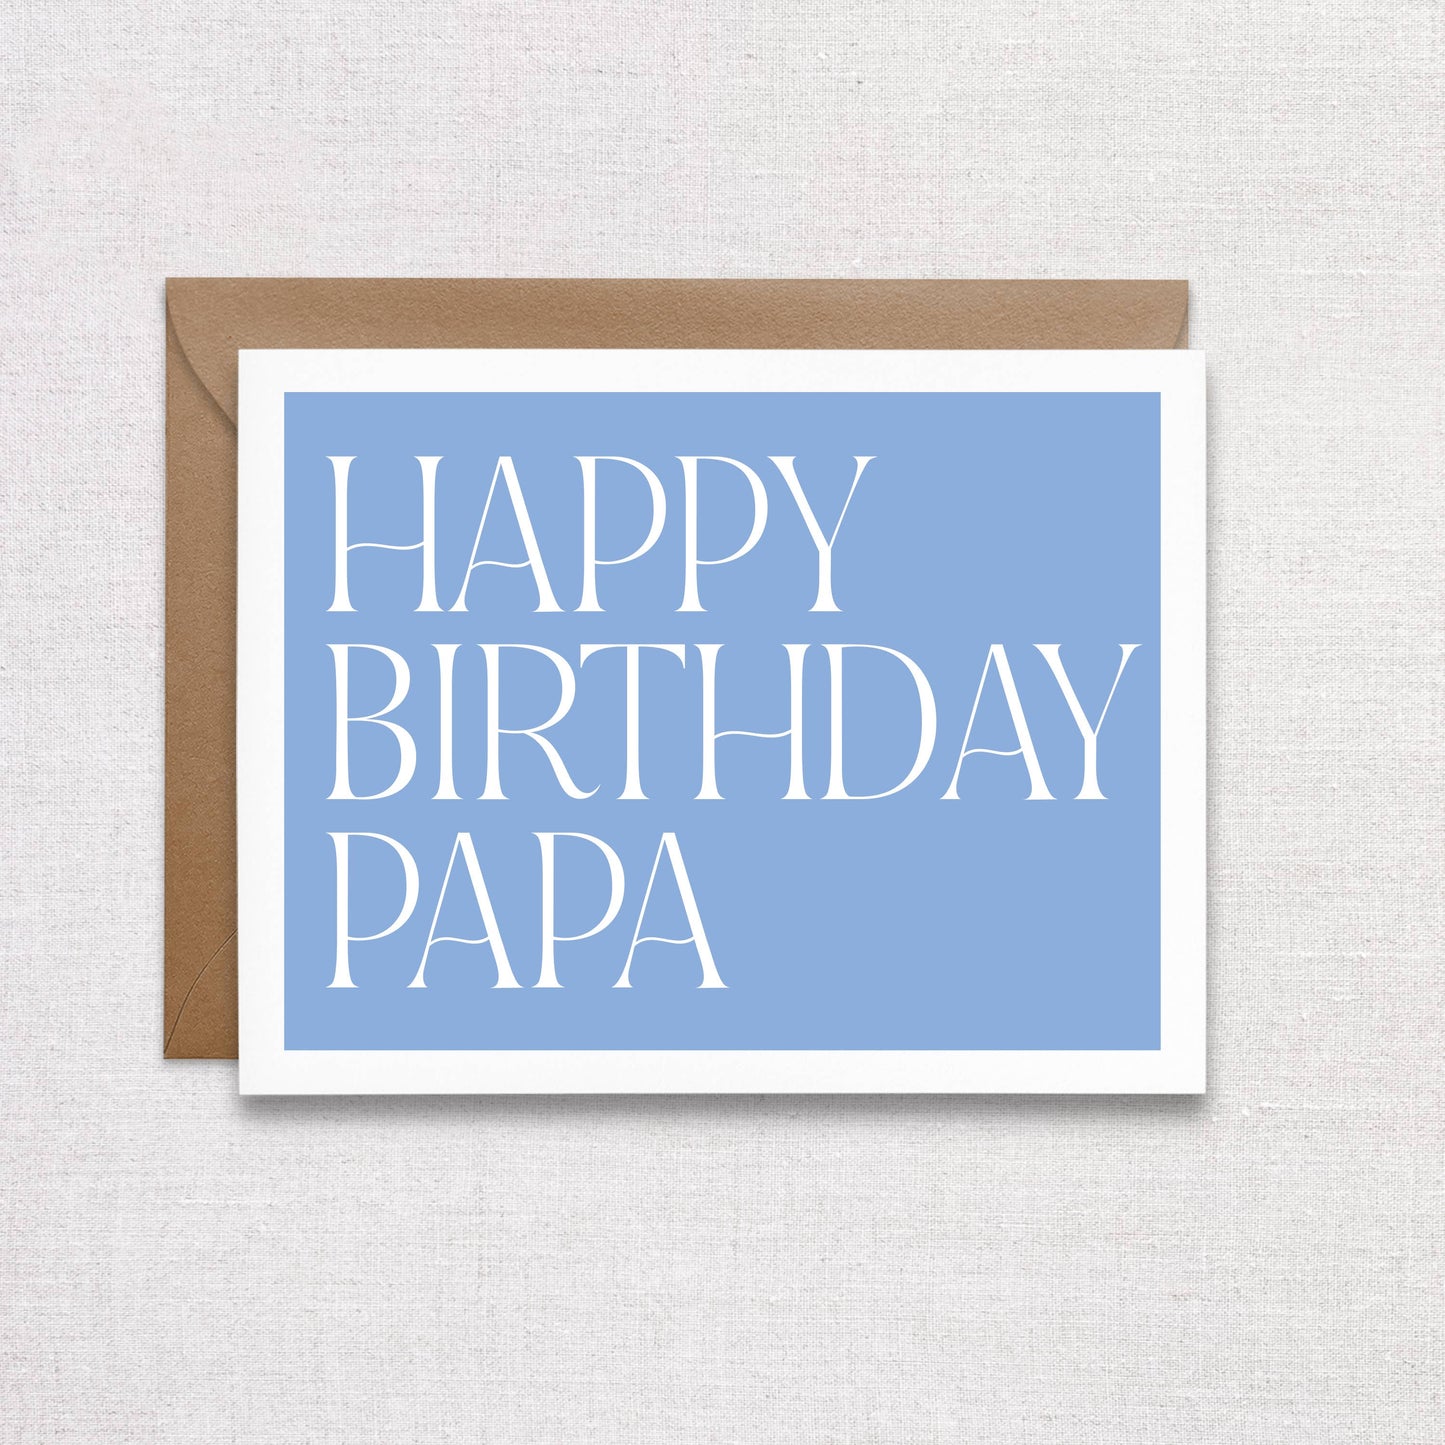 Happy Birthday Papa Card